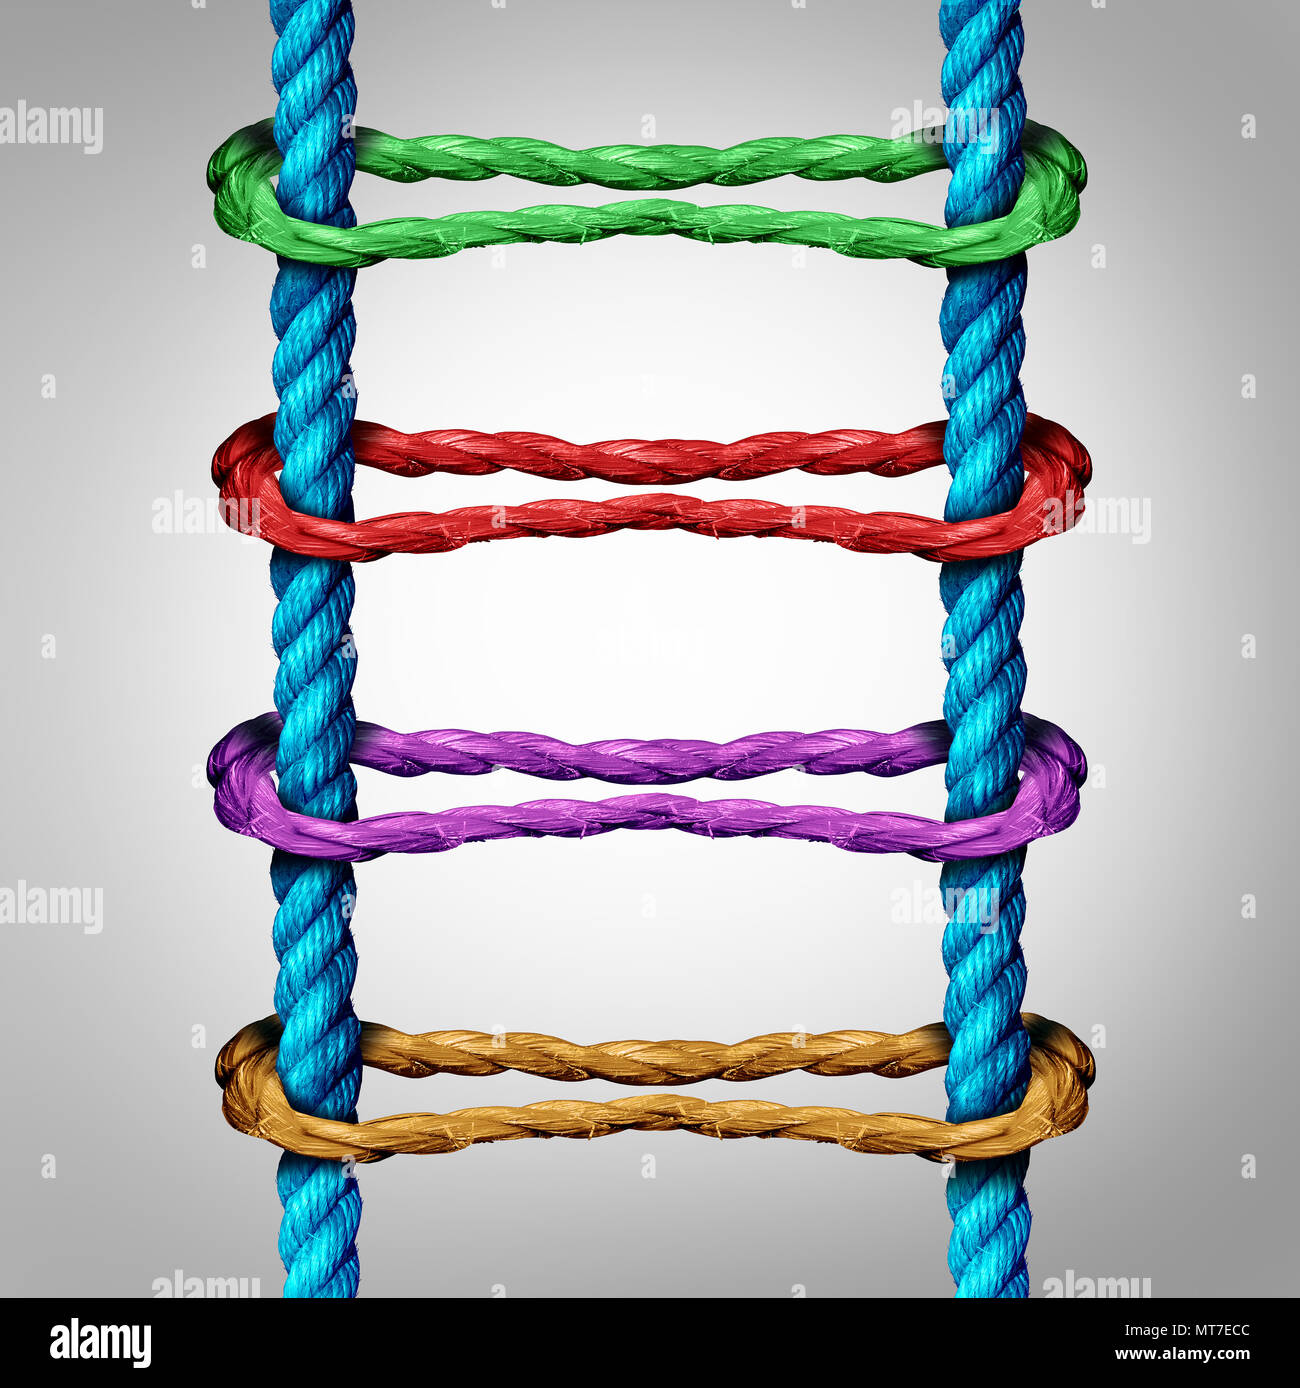 La escalera central de conexión como un concepto de negocio de la red como un grupo diverso de cuerdas conectados a cables paralelos como una metáfora para la conectividad. Foto de stock